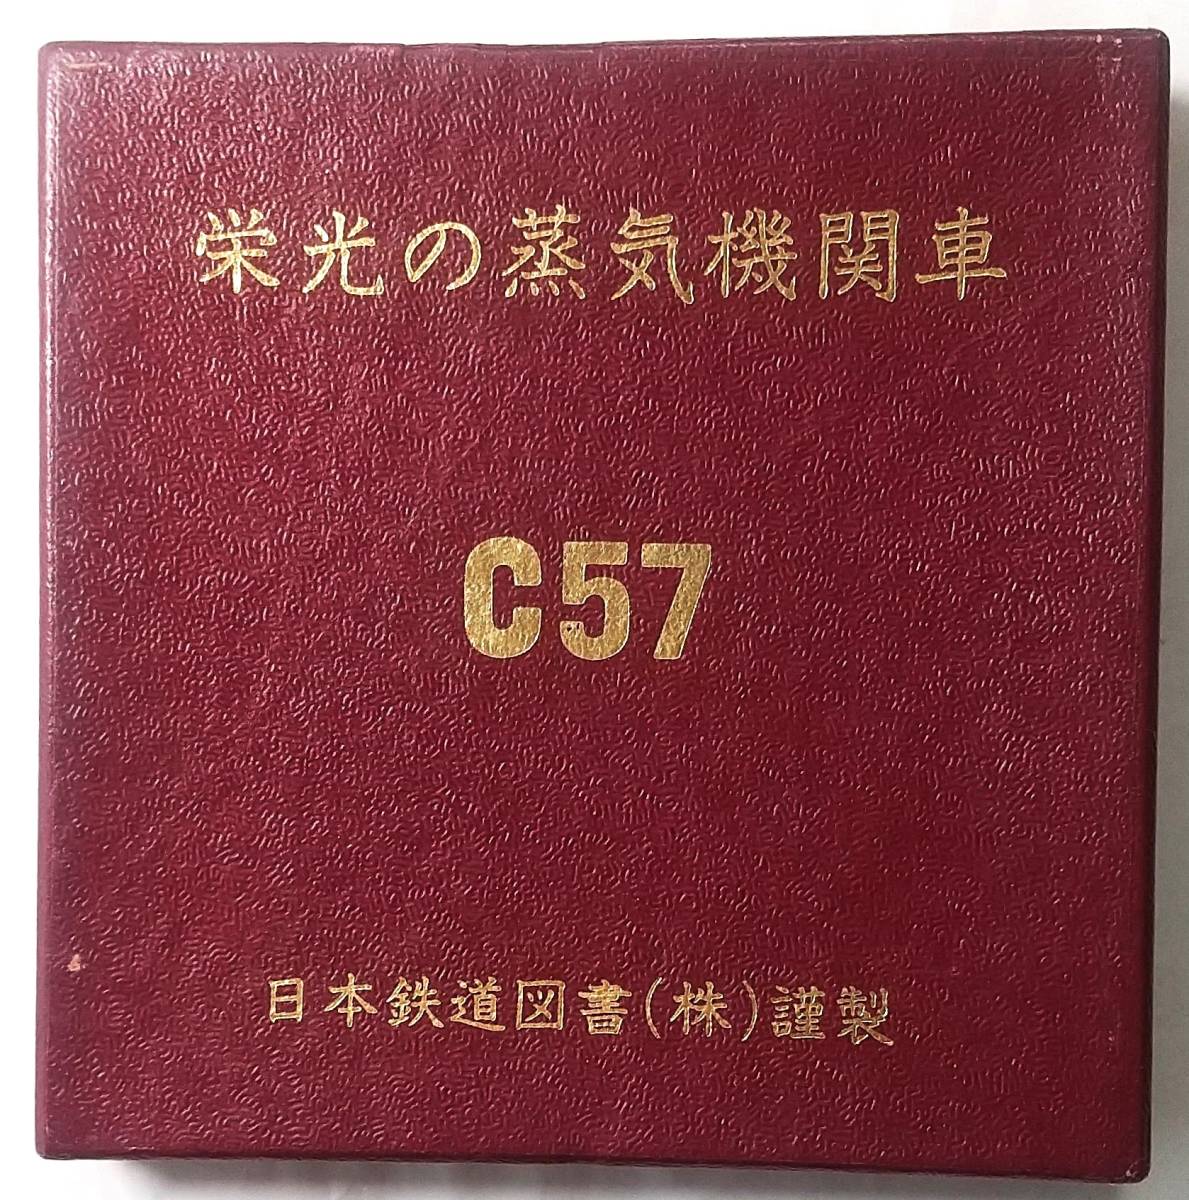 ▼栄光の蒸気機関車▼C 57　▼記念メダル▼日本鉄道図書㈱謹製▼na439_画像1